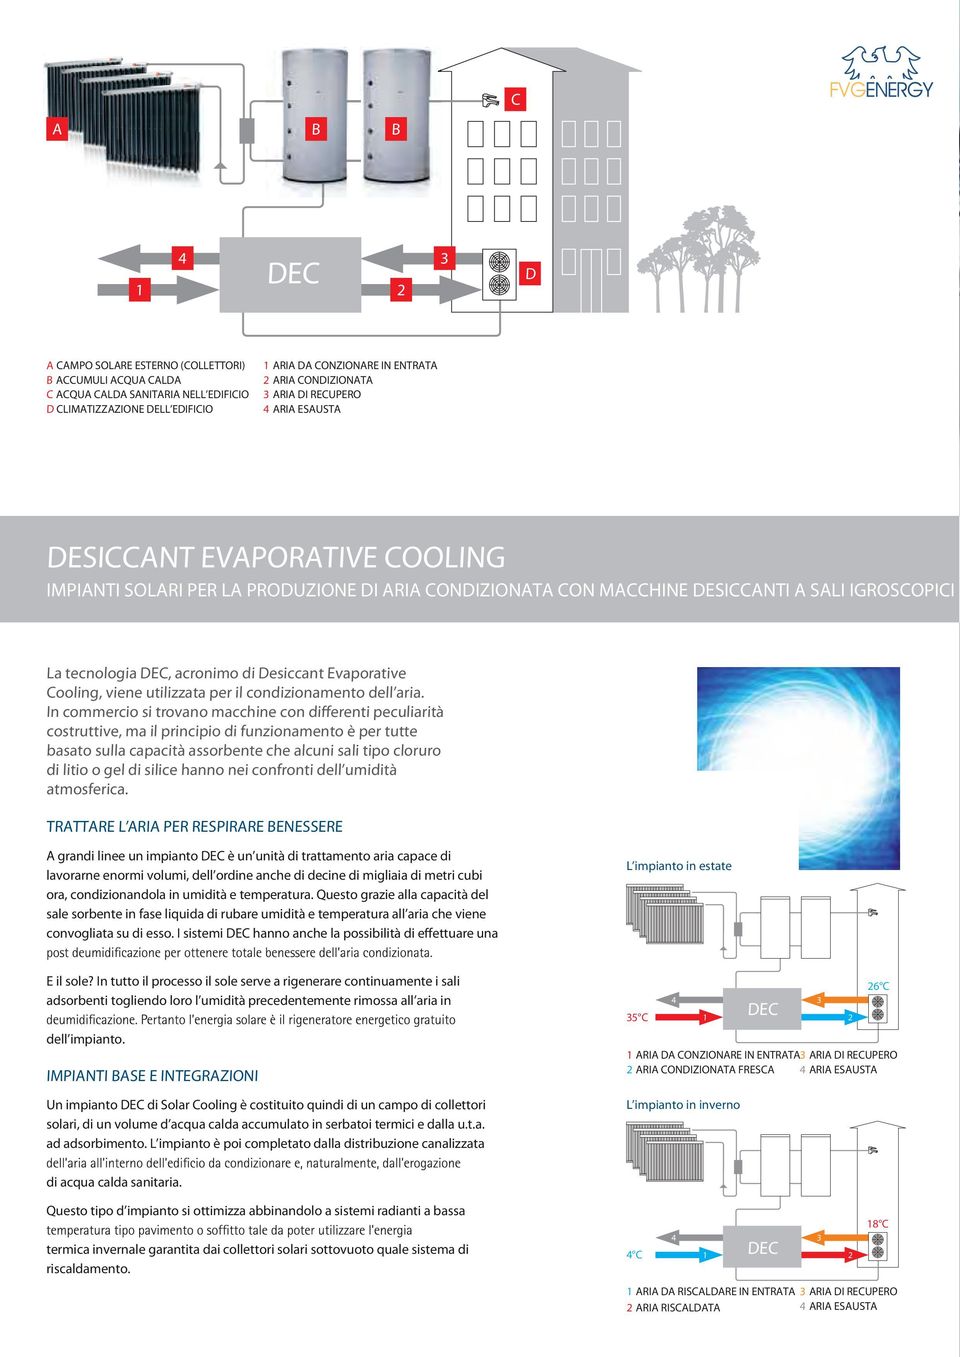 acronimo di Desiccant Evaporative Cooling, viene utilizzata per il condizionamento dell aria.